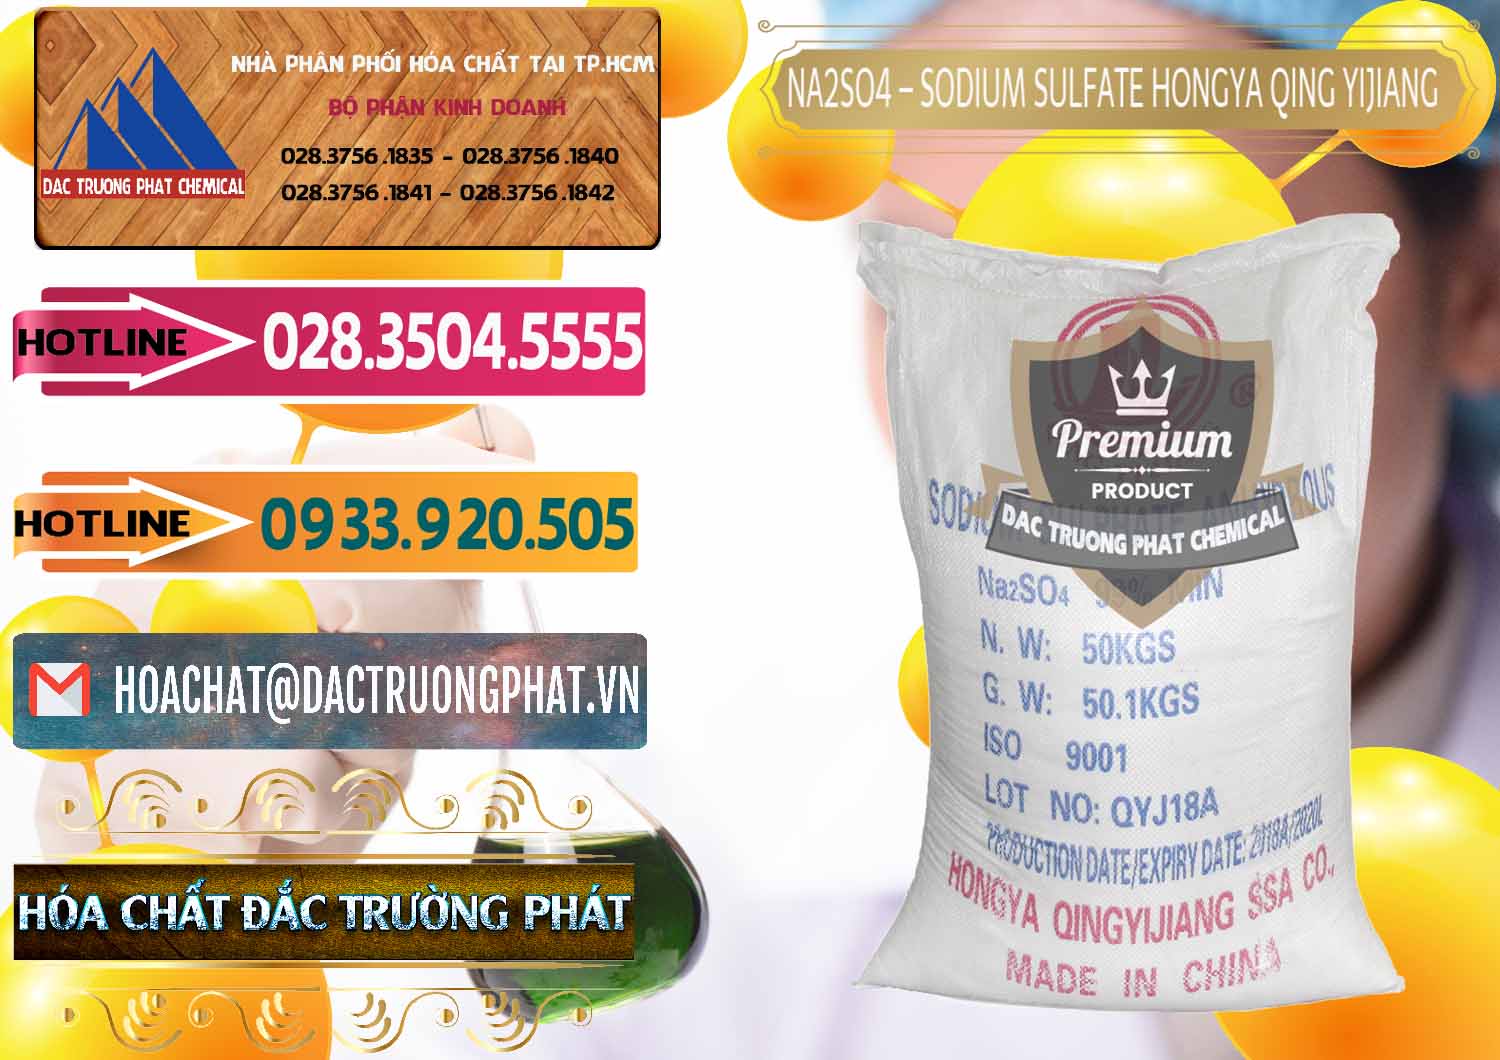 Nơi chuyên cung cấp & bán Sodium Sulphate - Muối Sunfat Na2SO4 Logo Cánh Bườm Hongya Qing Yi Trung Quốc China - 0098 - Đơn vị chuyên bán ( phân phối ) hóa chất tại TP.HCM - dactruongphat.vn